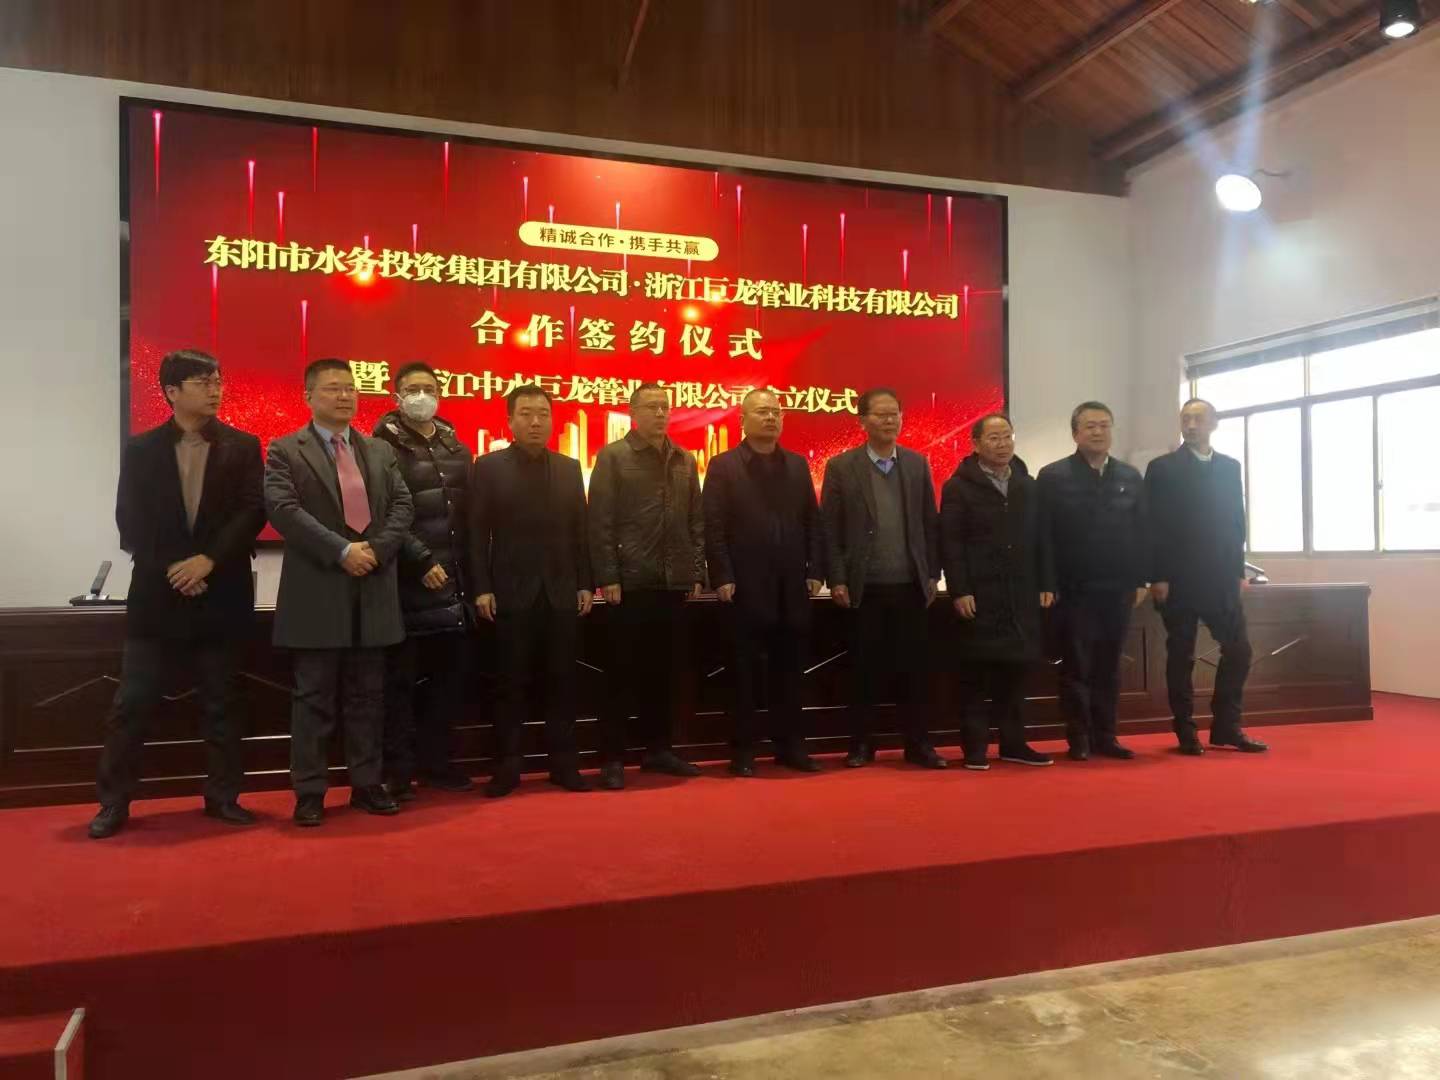  東陽市水務投資集團有限公司與浙江巨龍管業科技有限公司合作簽約儀式